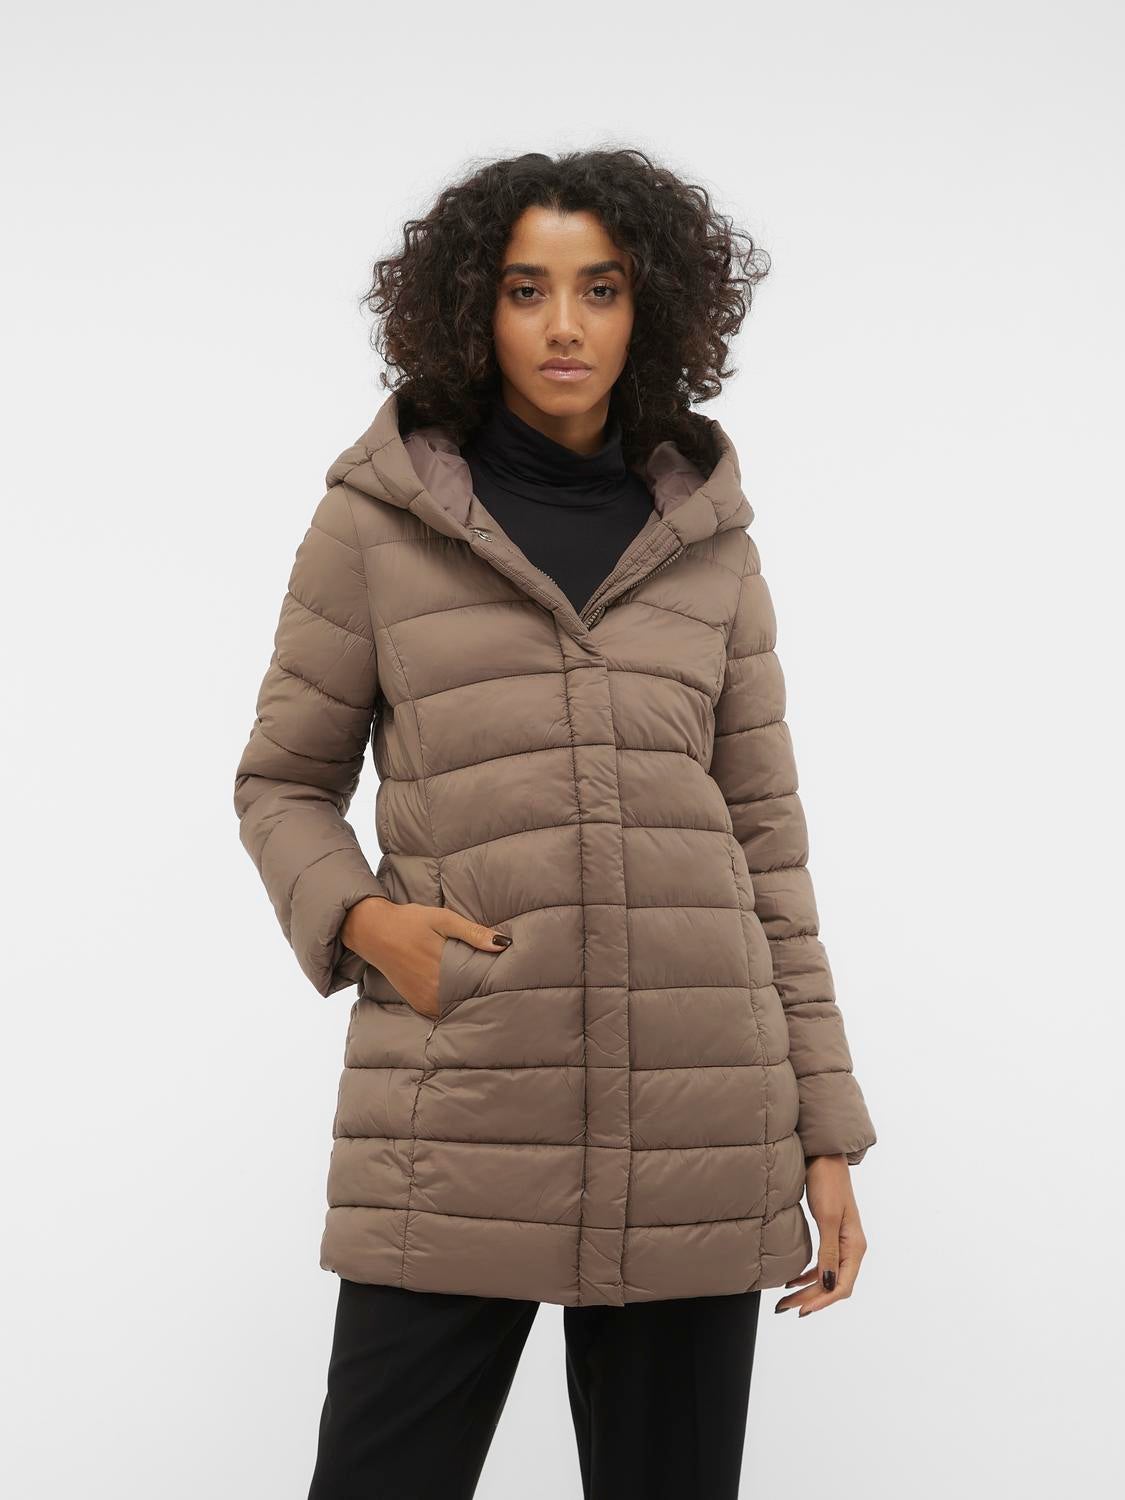 Buy Vero Moda Women's Jacket (208374702_Yarrow_Medium) at Amazon.in